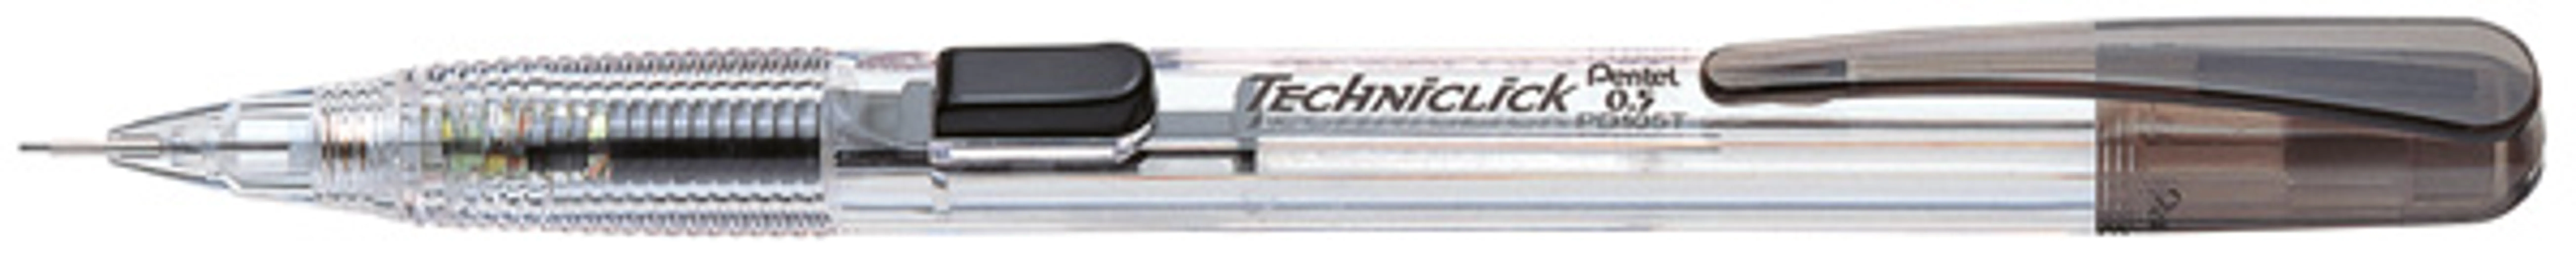 techniclick clutch pencil